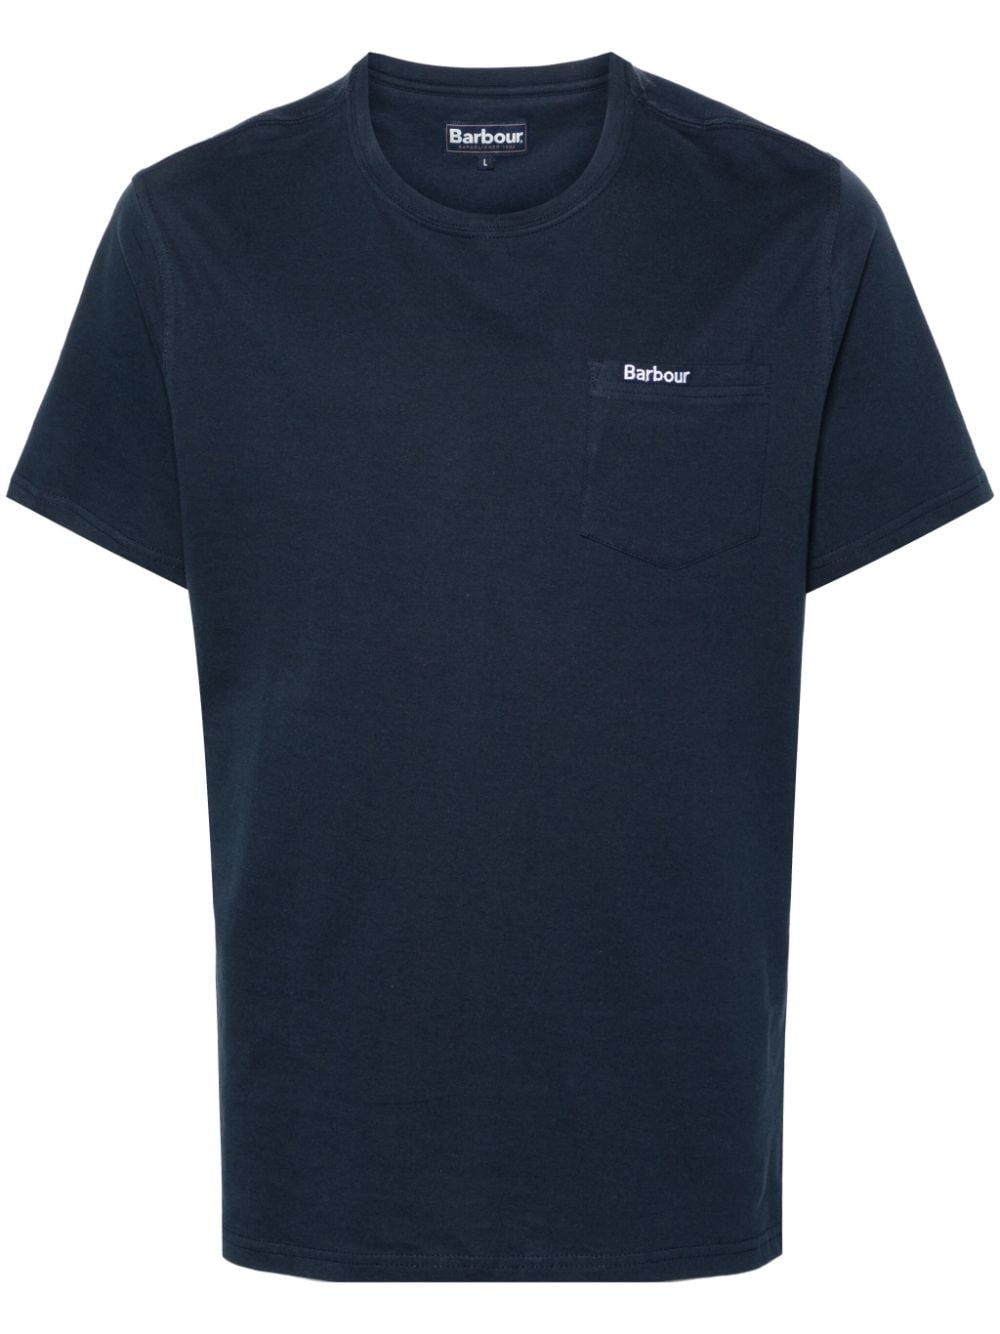 Barbour T-Shirt mit Logo-Stickerei - Blau